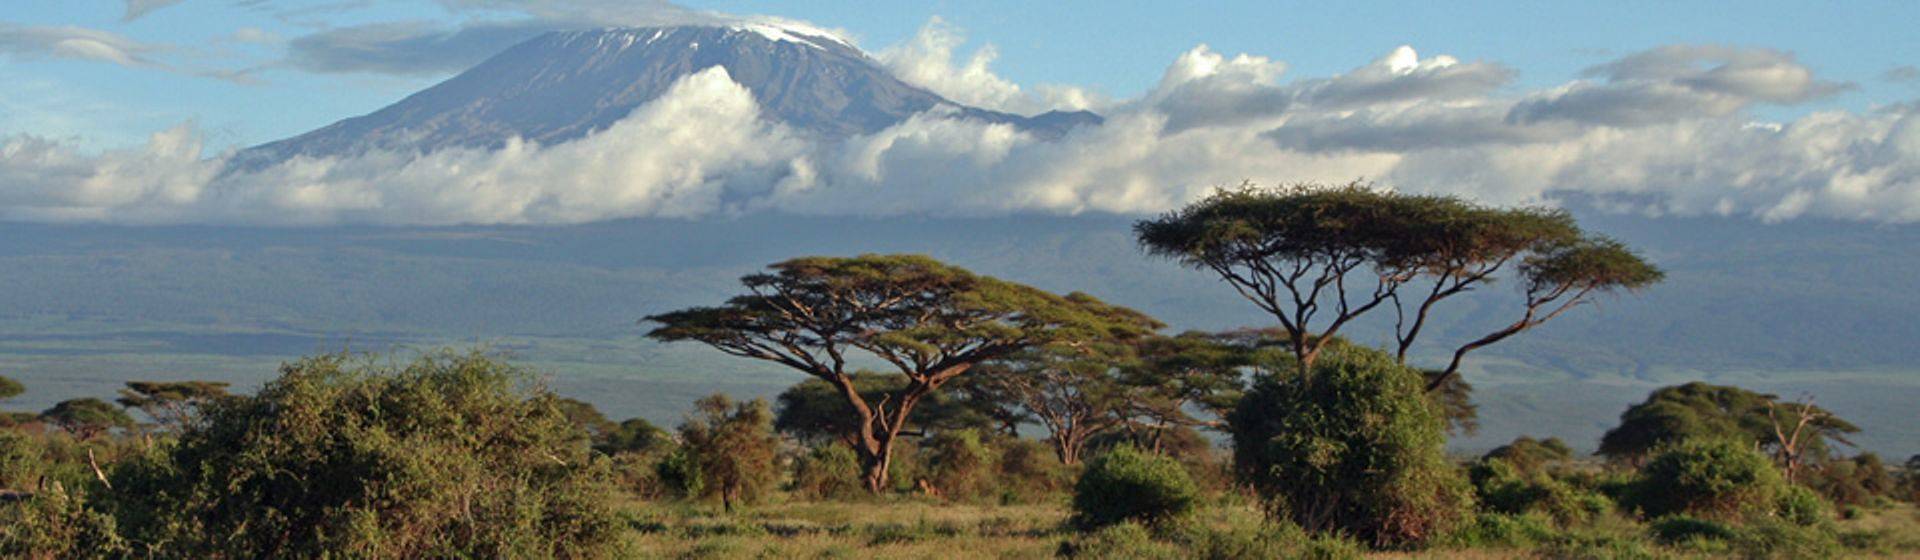 Holidays to Kilimanjaro Image